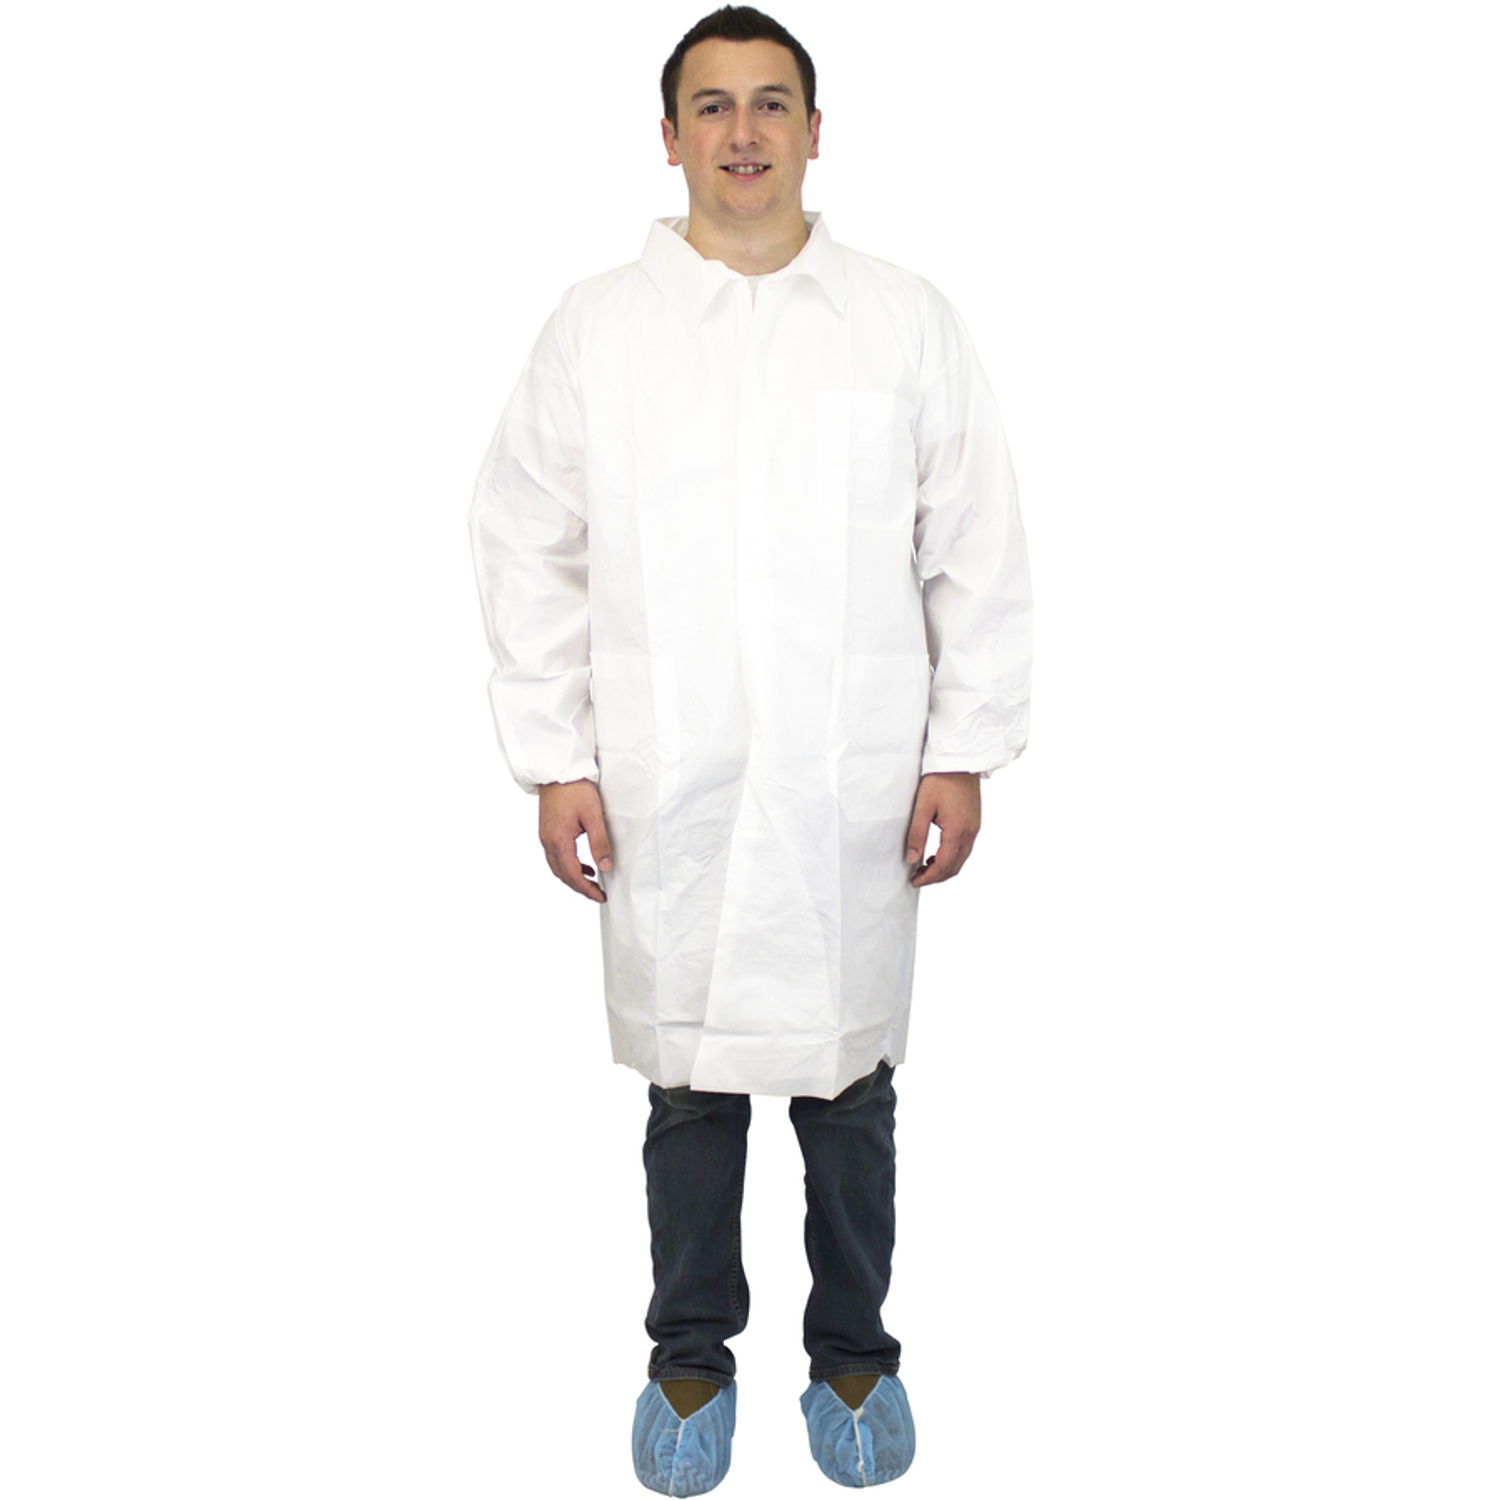 White Lab Coats 3-Xtra Large Size, Polypropylene, 60 g/m2